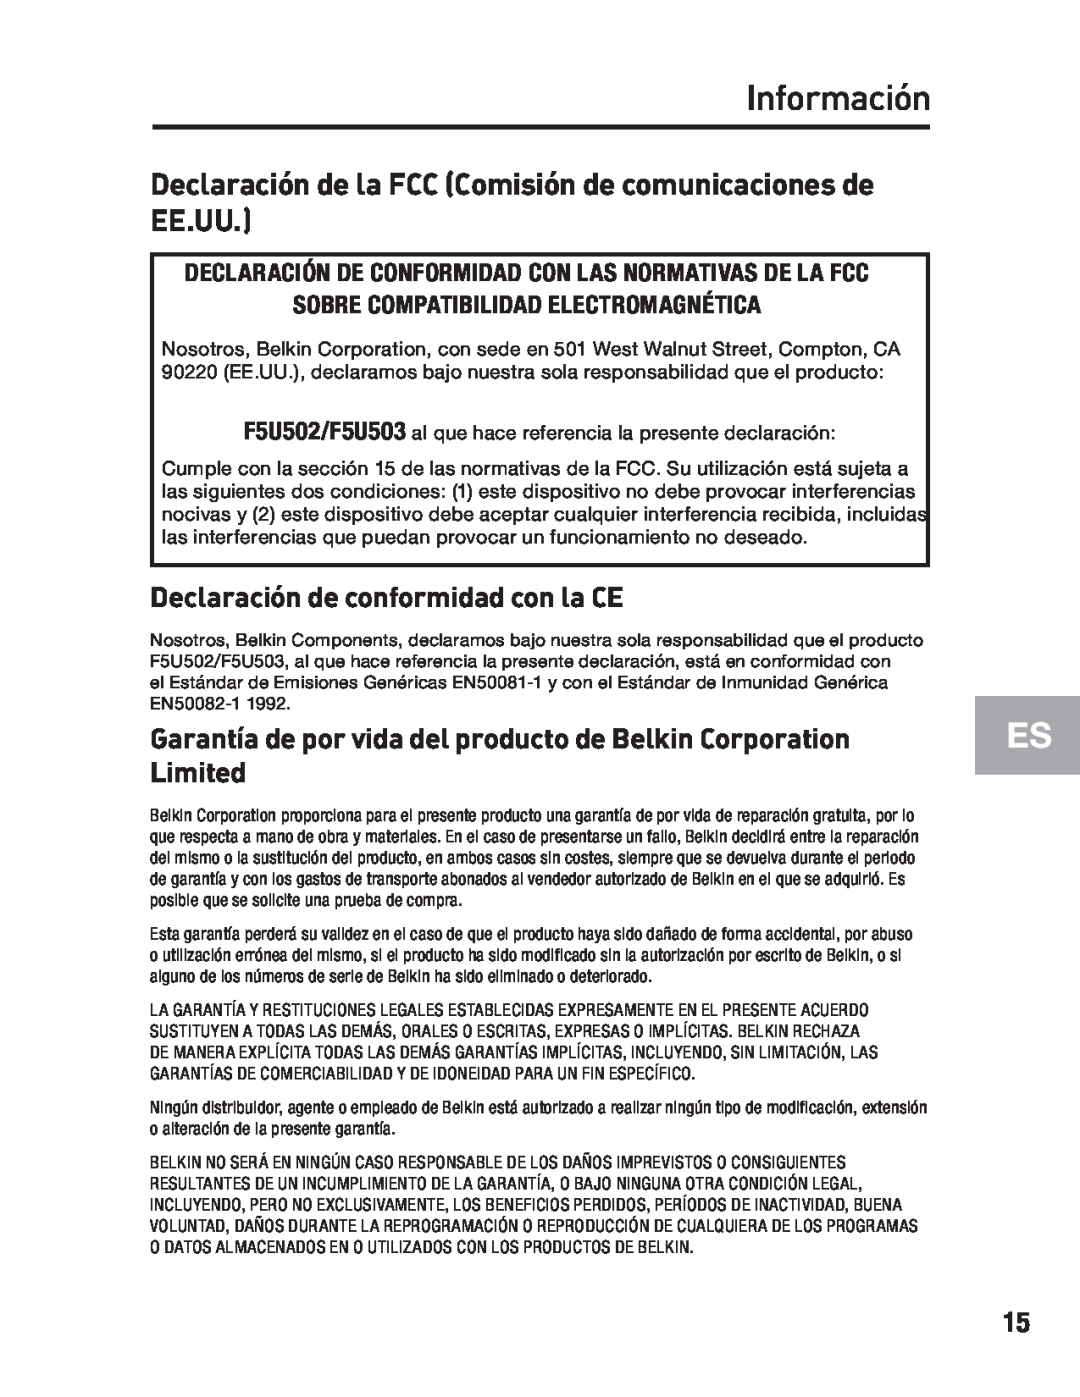 Belkin F5U502 Información, Declaración de la FCC Comisión de comunicaciones de EE.UU, Declaración de conformidad con la CE 